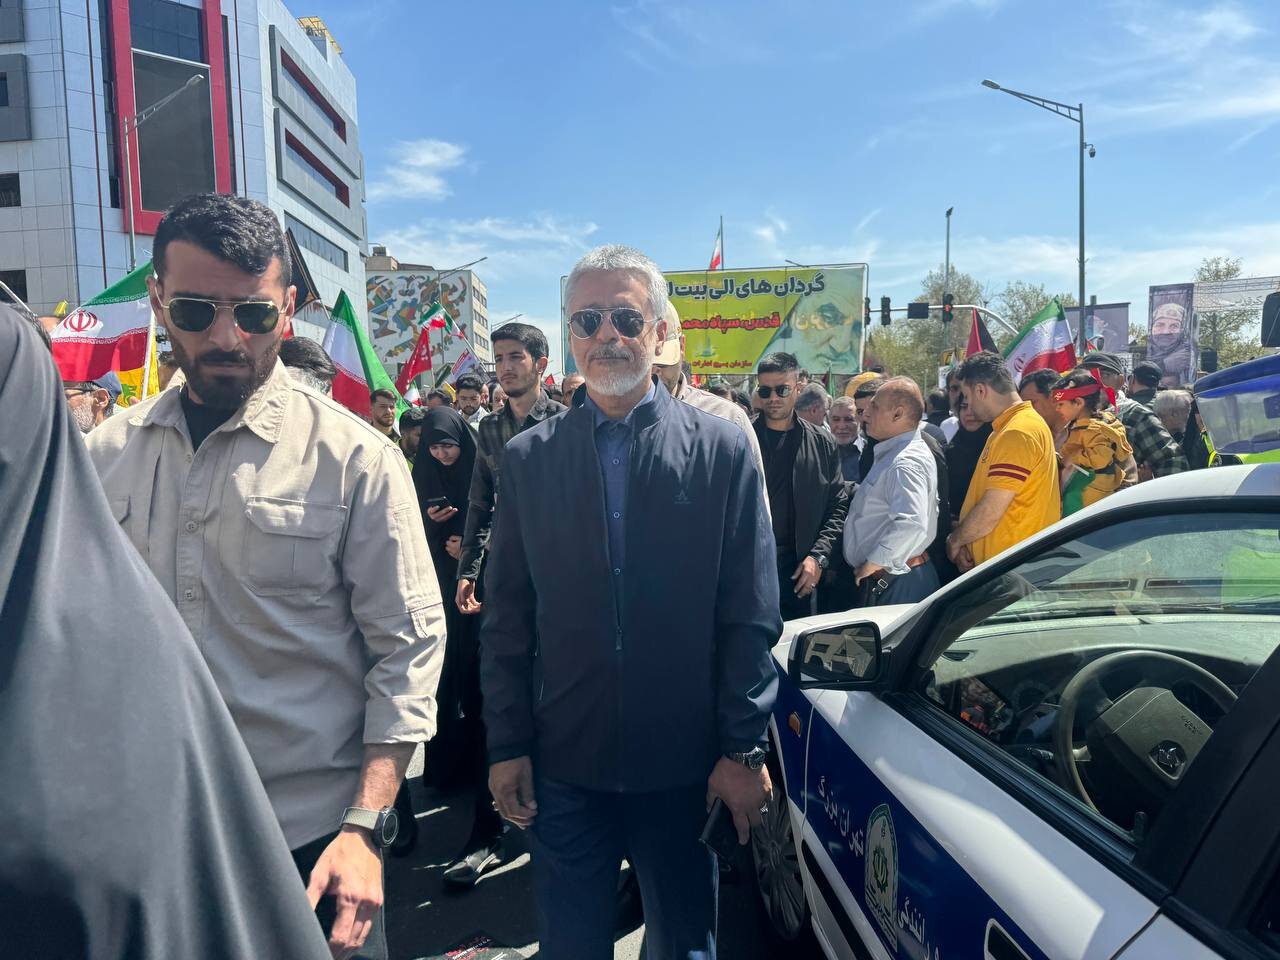 ایرانی عوام کا فلسطینیوں کی حمایت میں اجتماع / تہران میں شہدائے راہ قدس سے تجدید عہد